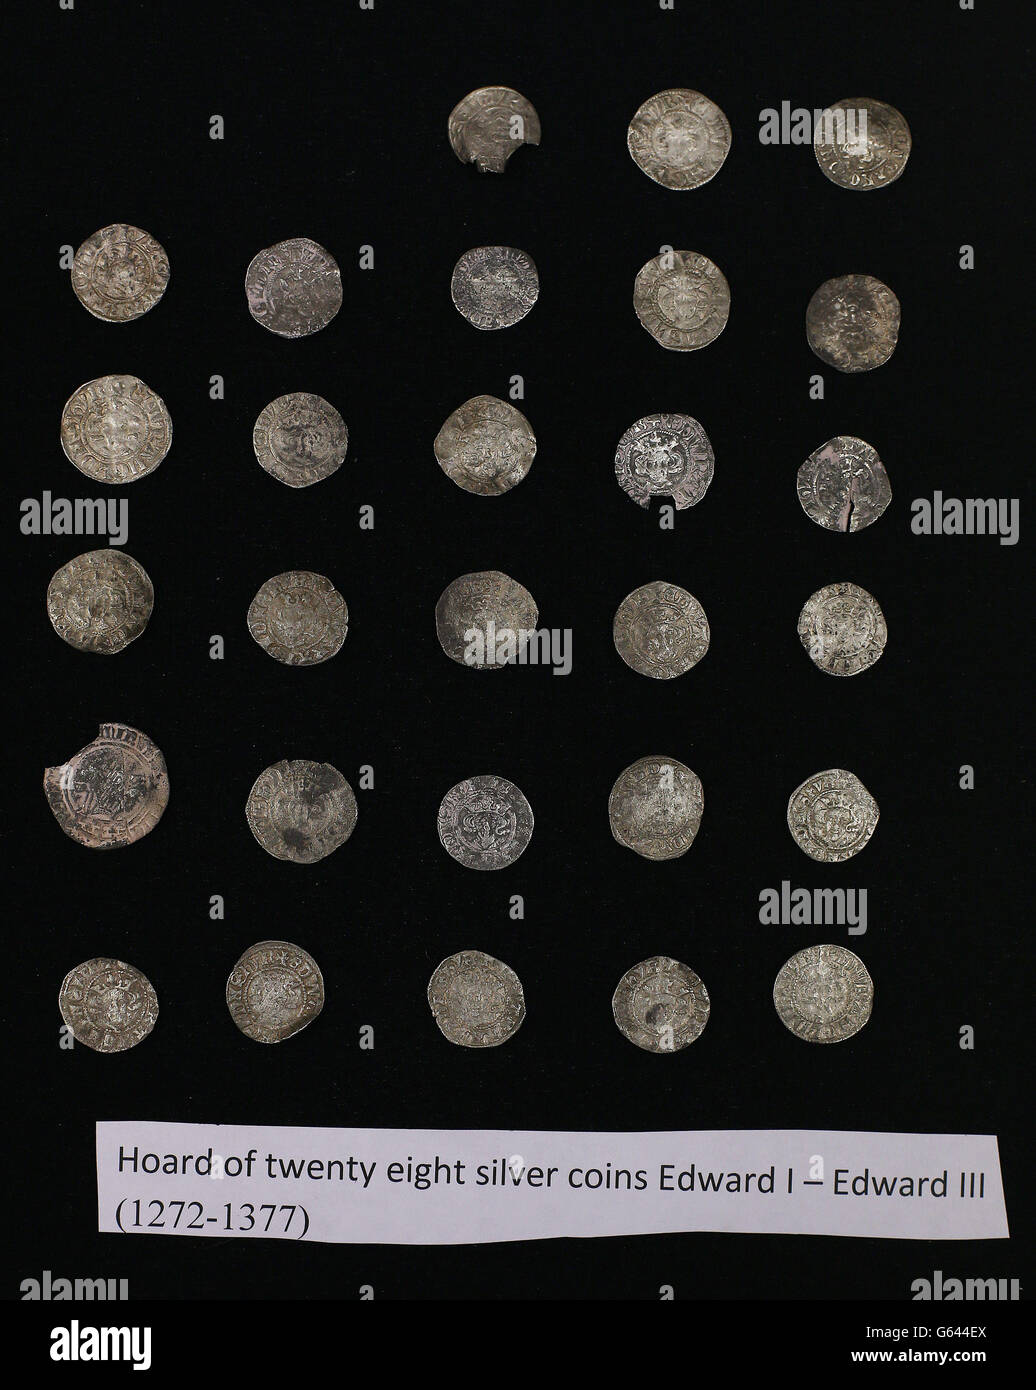 30 pièces d'argent médiévales, parmi quelques-uns des 900 objets illégalement pillés en Irlande par un chasseur de trésors avec un détecteur de métal, qui ont été exposés aux médias au Musée national d'Irlande à Dublin, après avoir été récupérés dans une opération de police. Banque D'Images